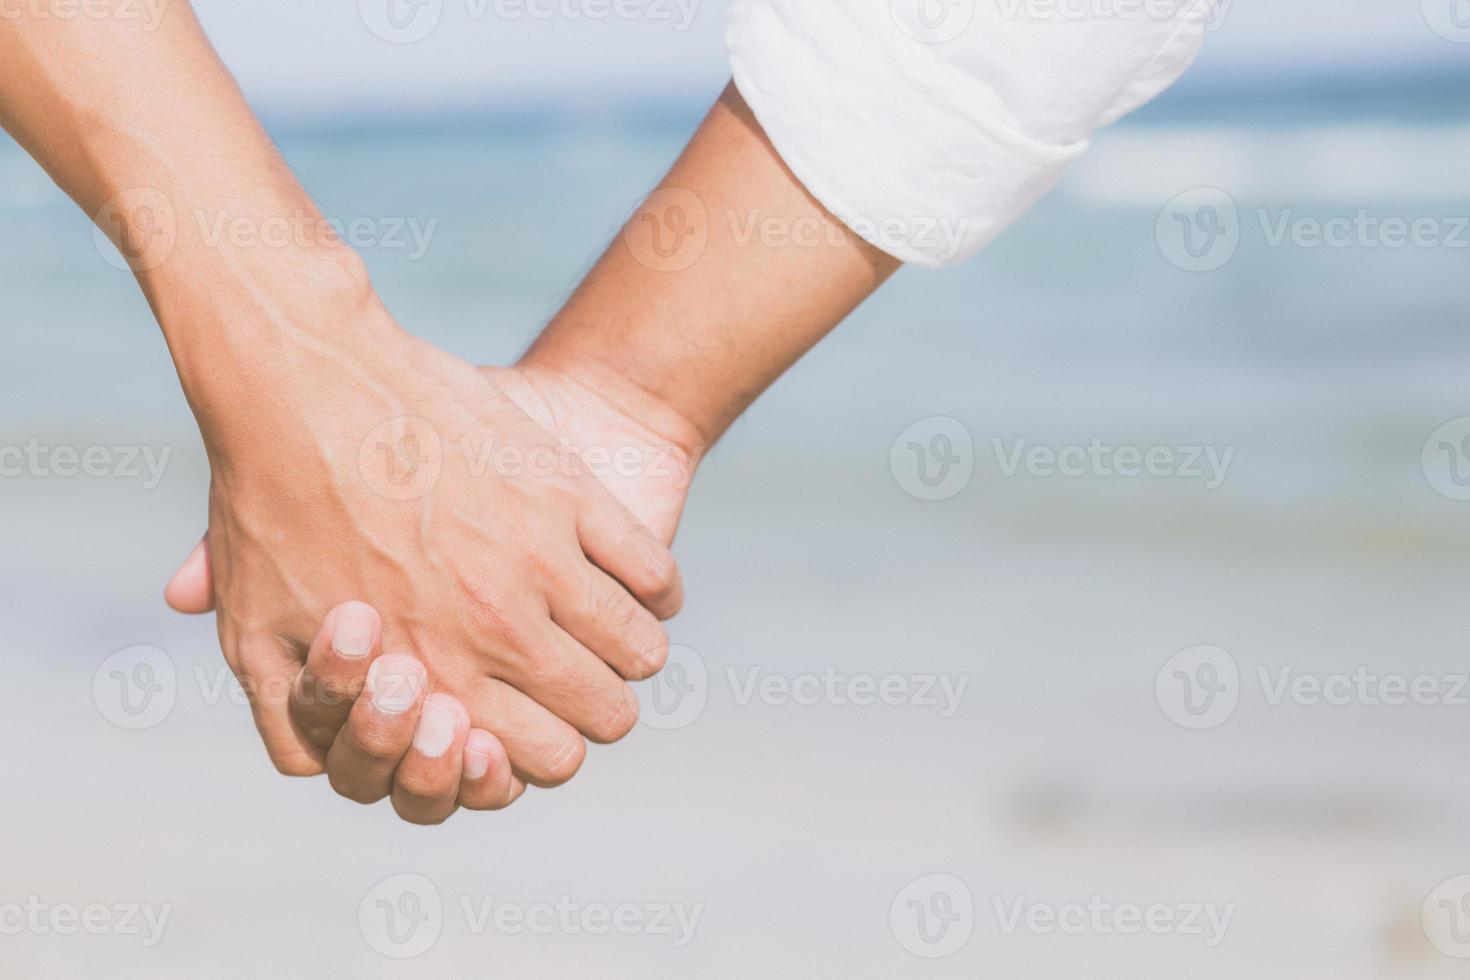 coppia gay asiatica del primo piano che si tiene per mano insieme sulla spiaggia con relax e svago in estate, due uomini legali omosessuali lgbt felici e romantici in vacanza, concetto di amante del sesso di relazione. foto